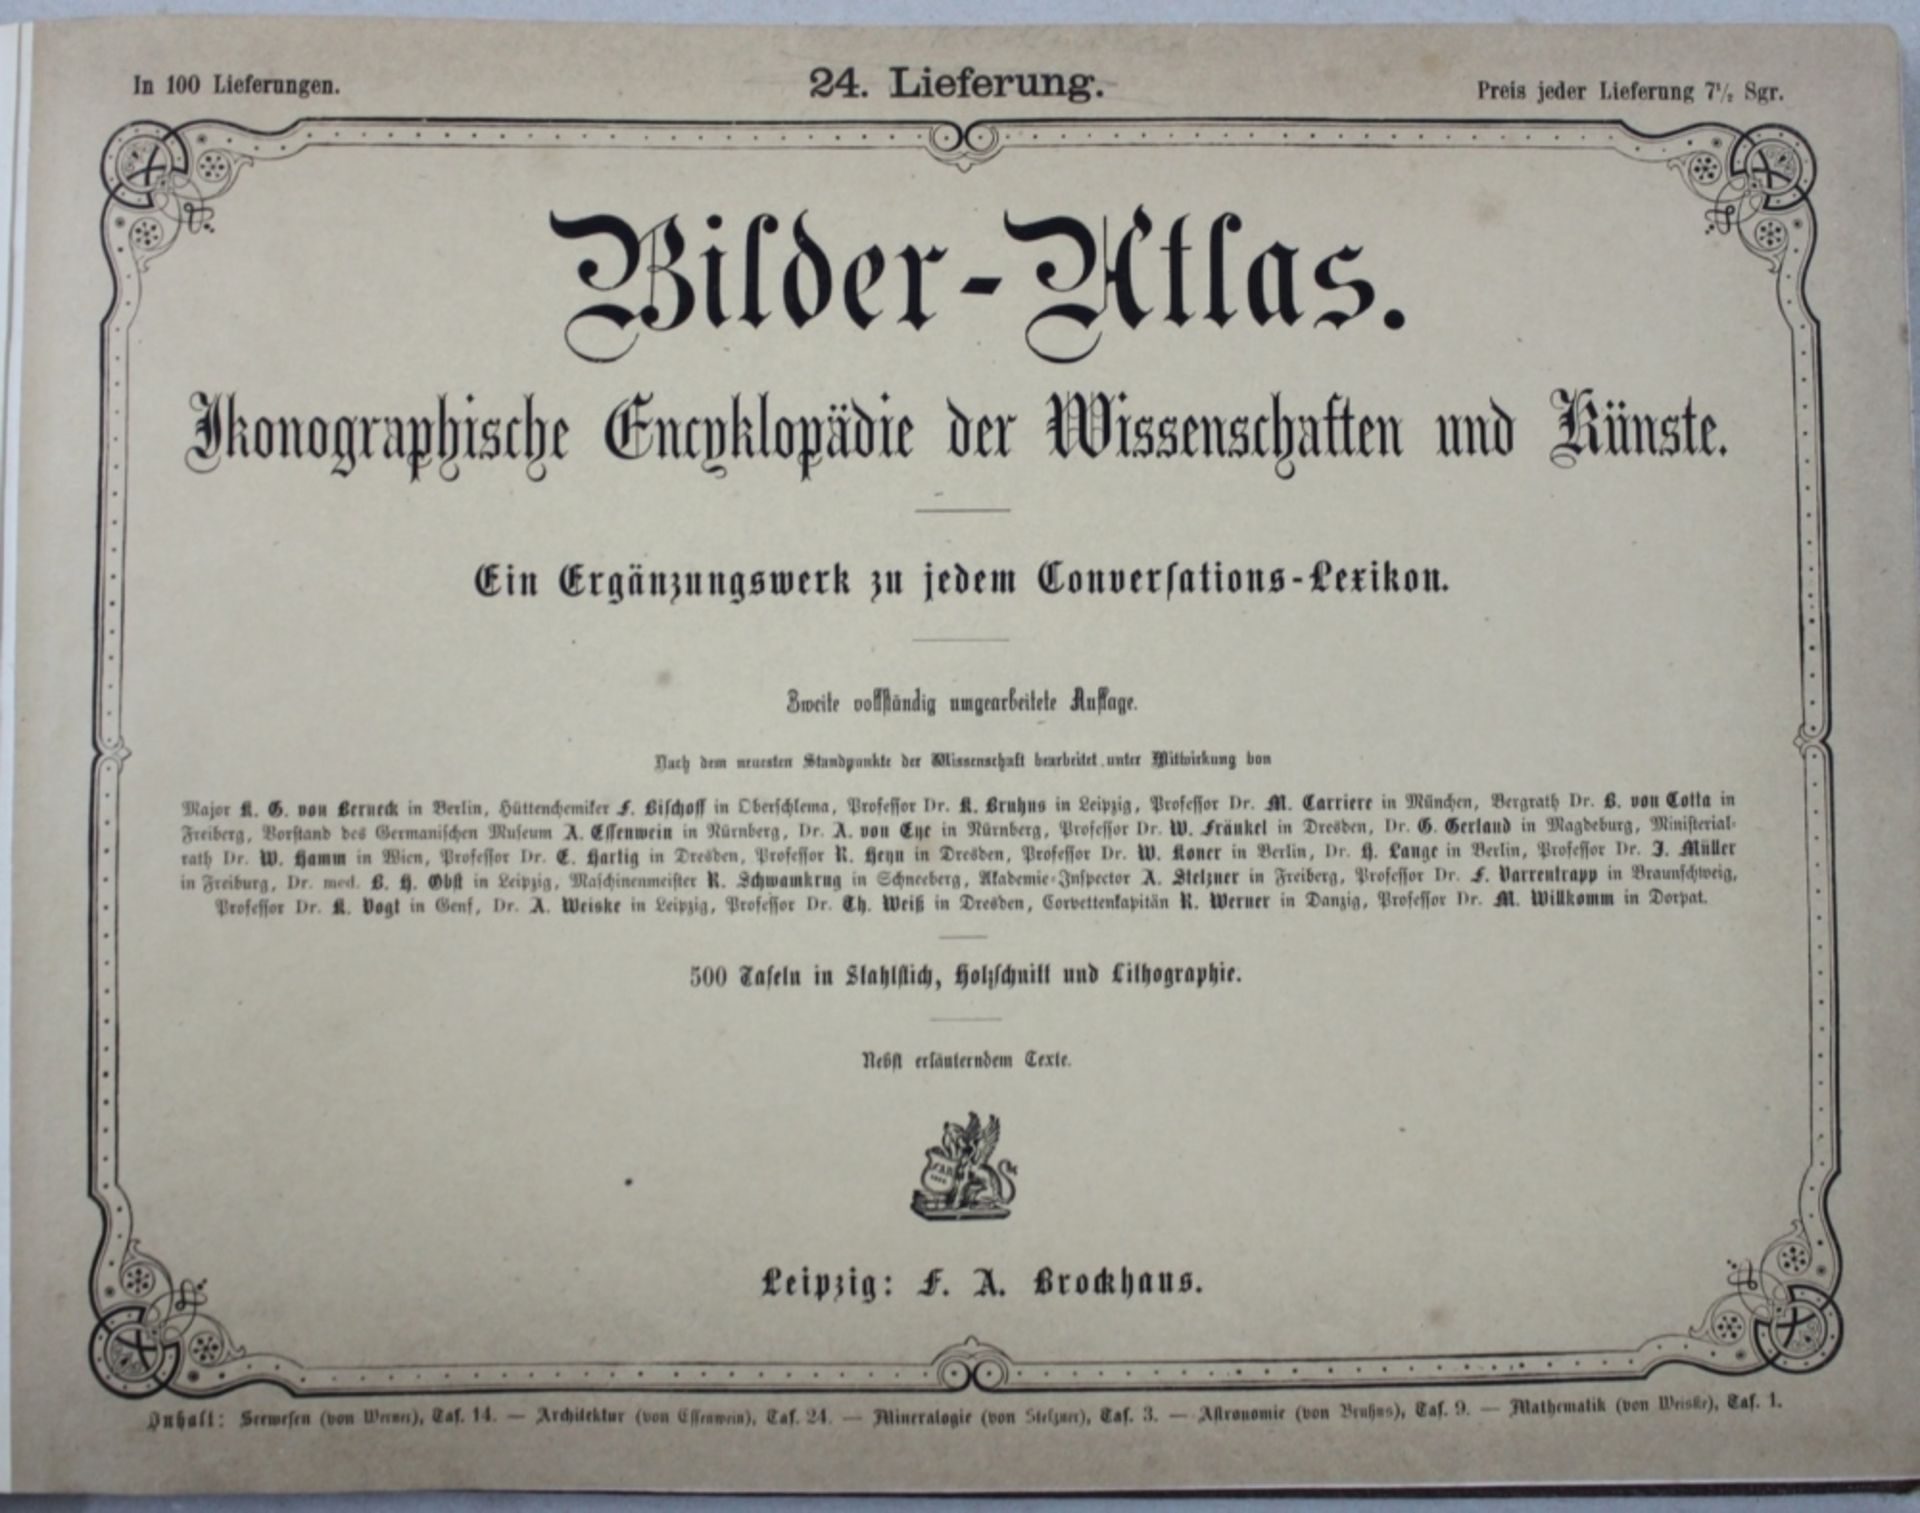 Reisen. Atlas. Brockhaus. Bilder – Atlas. Ikonographisches Encyklopädie der Wissenschaft und Künste.